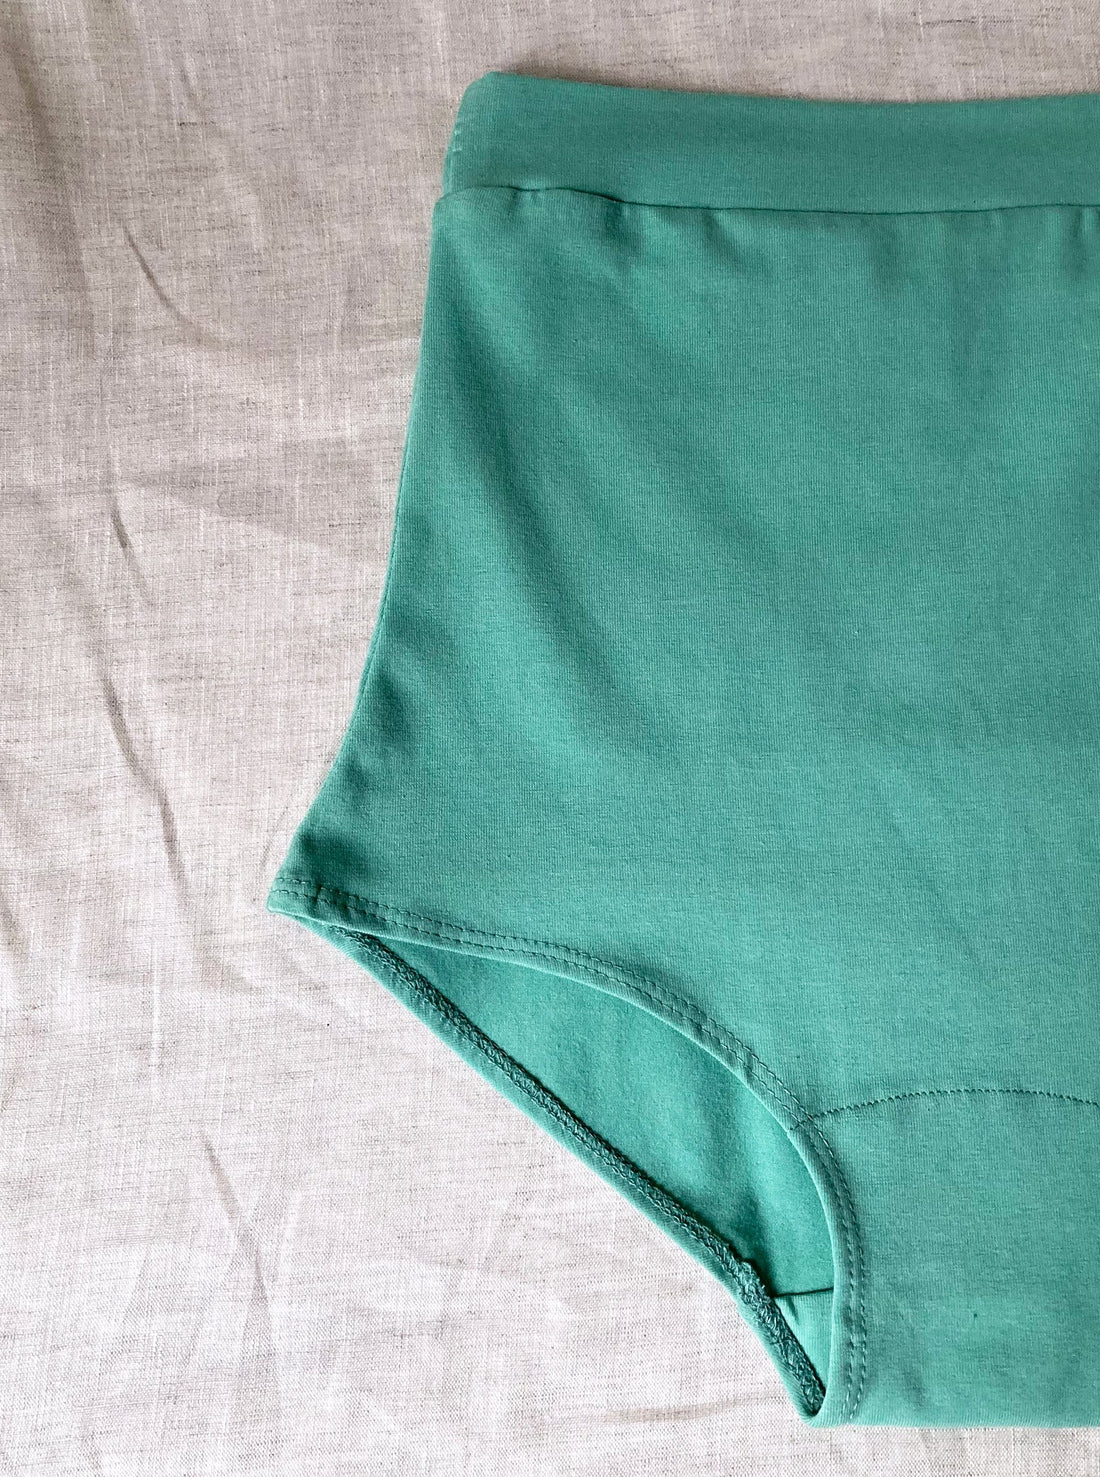 OUXBM Womens Underwear High Waist Briefs Seamless Panties for